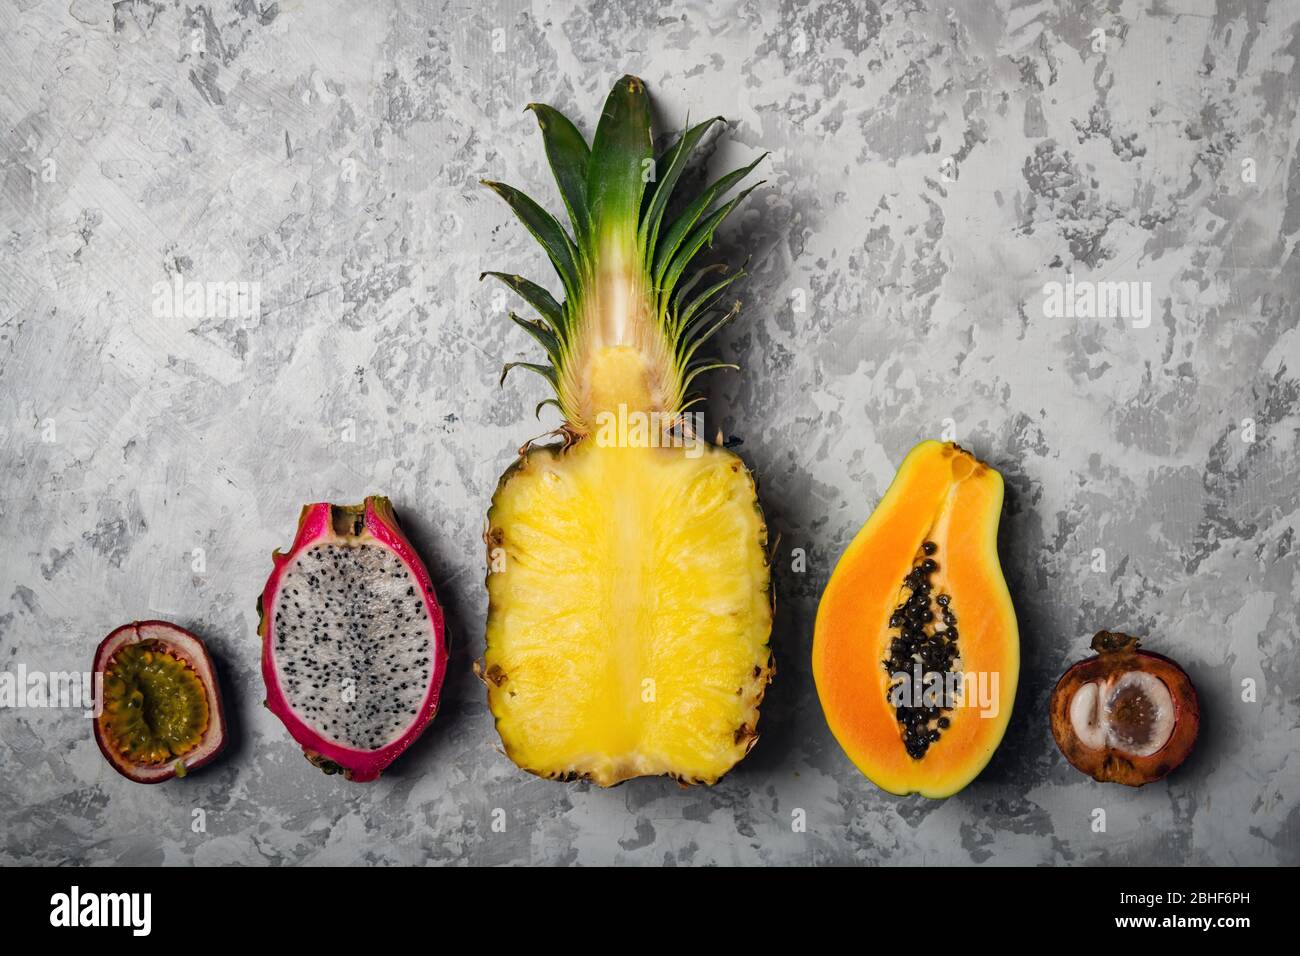 Ananas, Papaya, fruit de la passion Maracuya, fruit du Dragon Pitaya et Mangosteen sur fond de béton gris. Concept de fruits tropicaux exotiques. Photographie alimentaire Banque D'Images